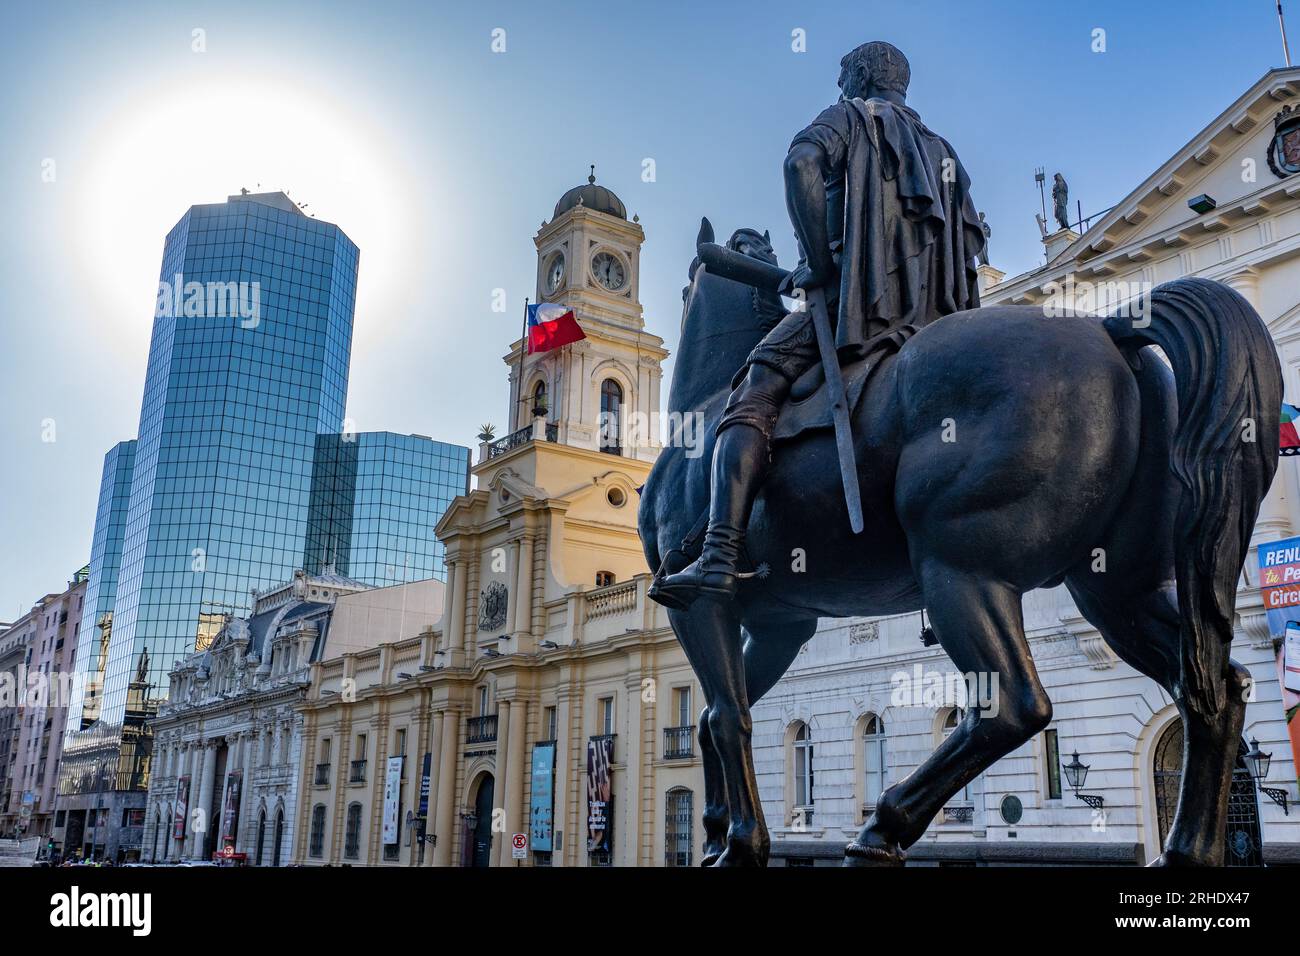 The equestrian statue of Don Pedro de Valdivia in the Plaza de Armas De San Fernando, Santiago, Chile.  Behind is the Palacio de la Real Audiencia de Stock Photo